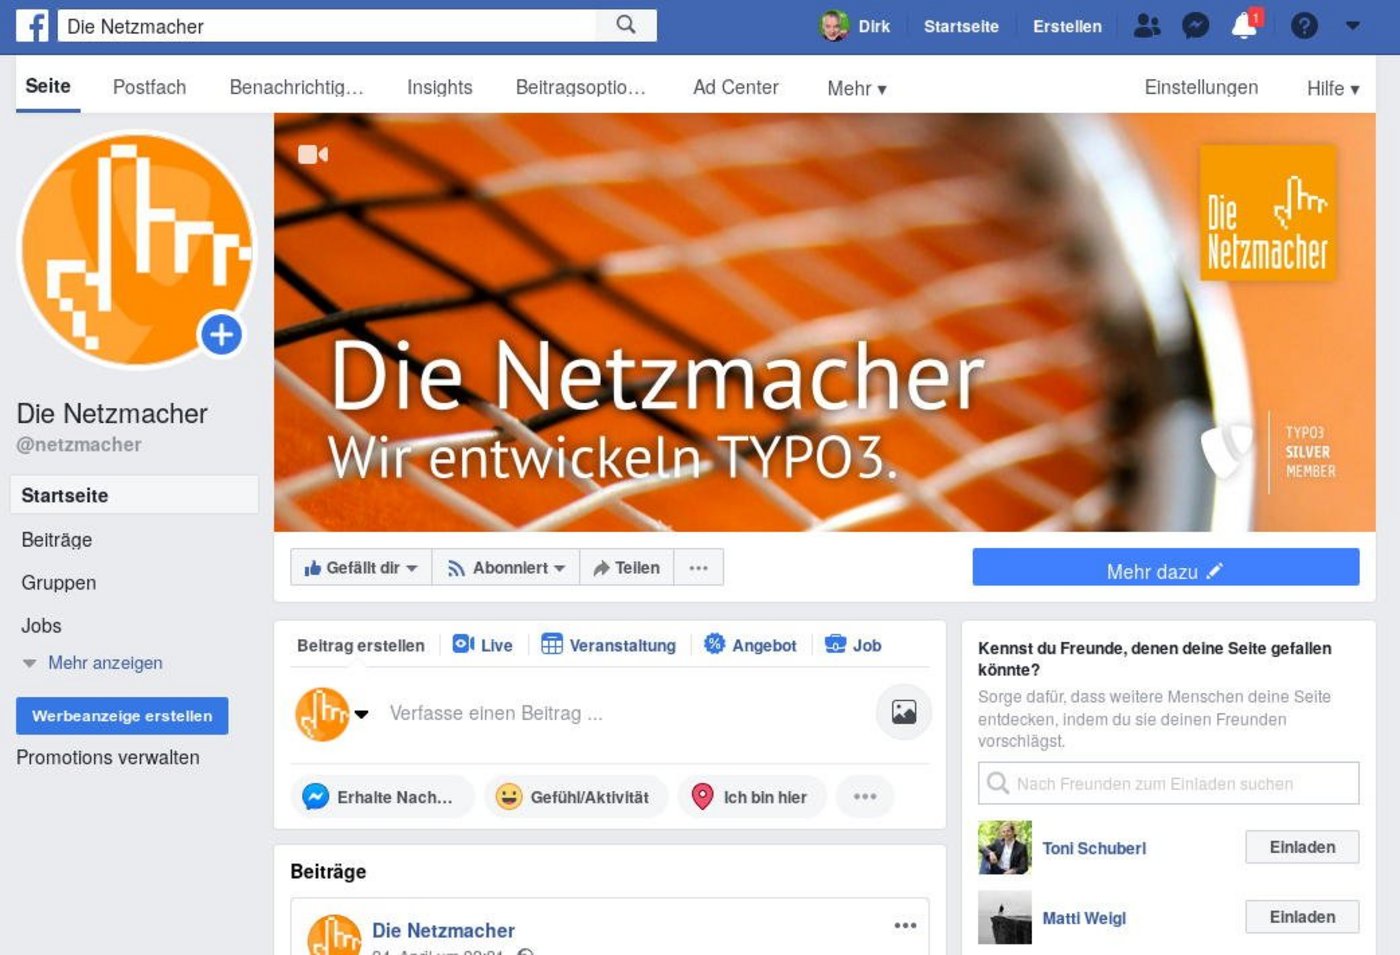 Unternehmens-Website der Netzmacher bei facebook: Wir entwickeln TYPO3